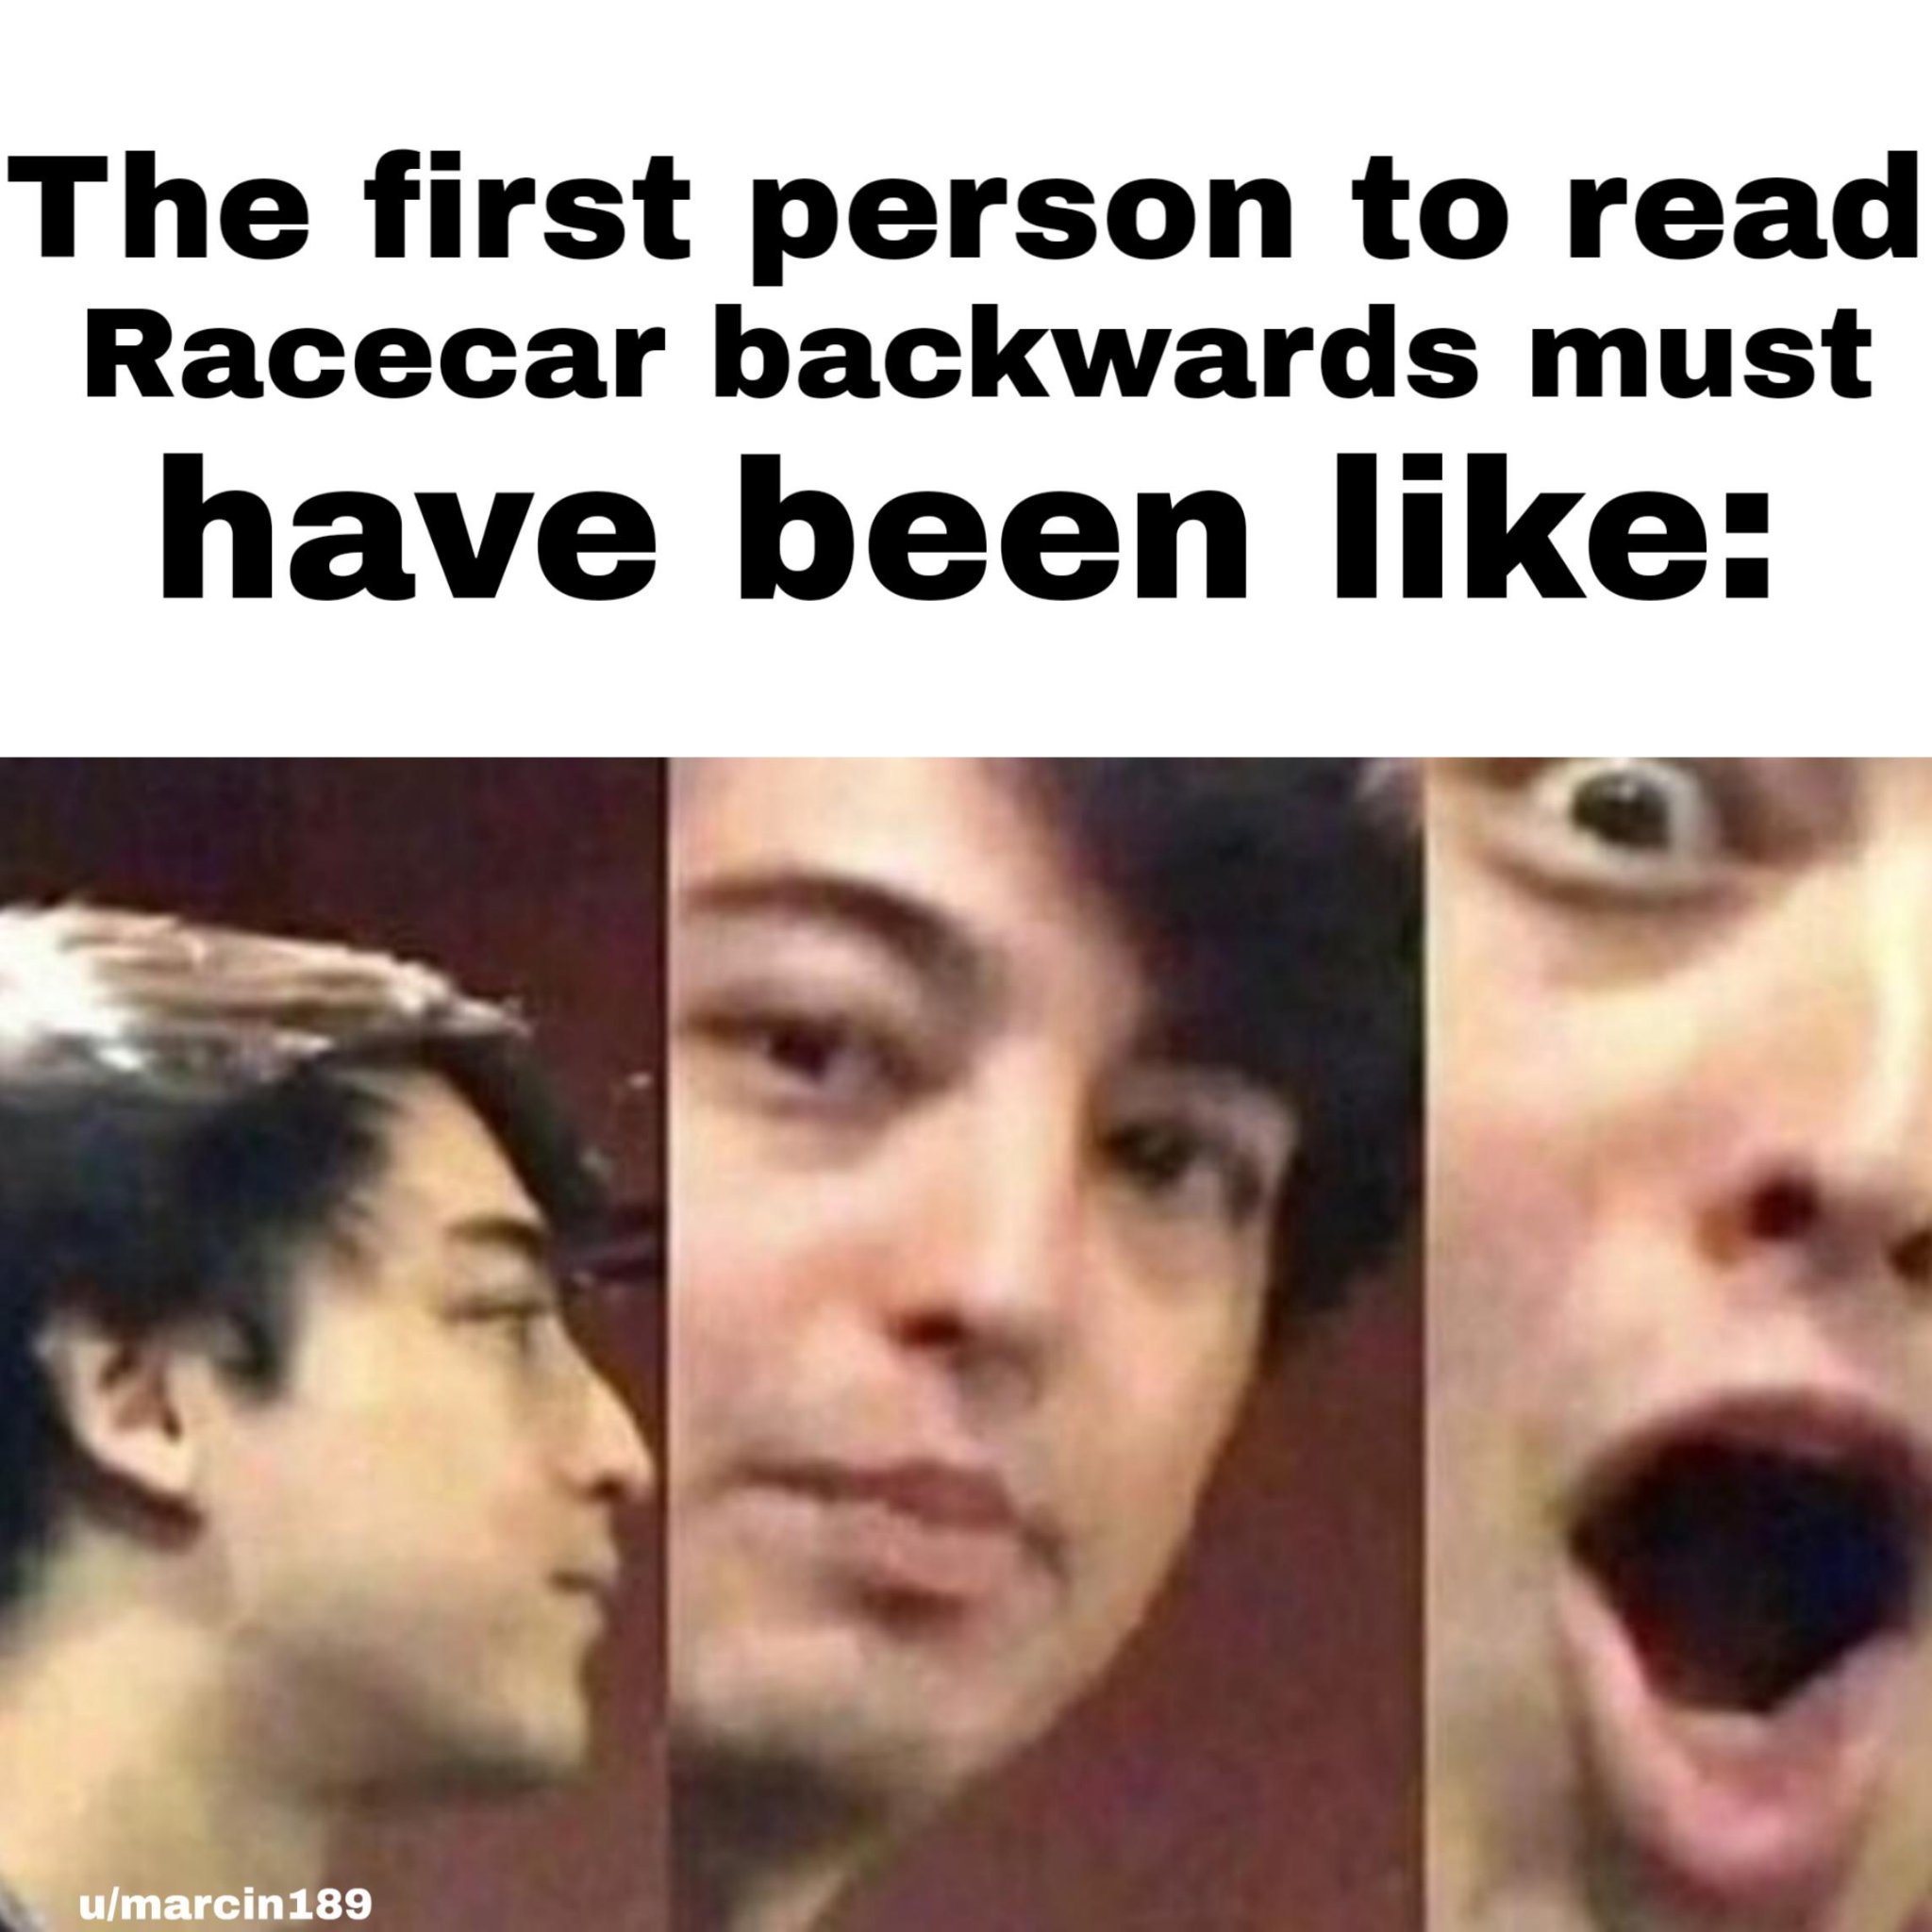 racecar - meme